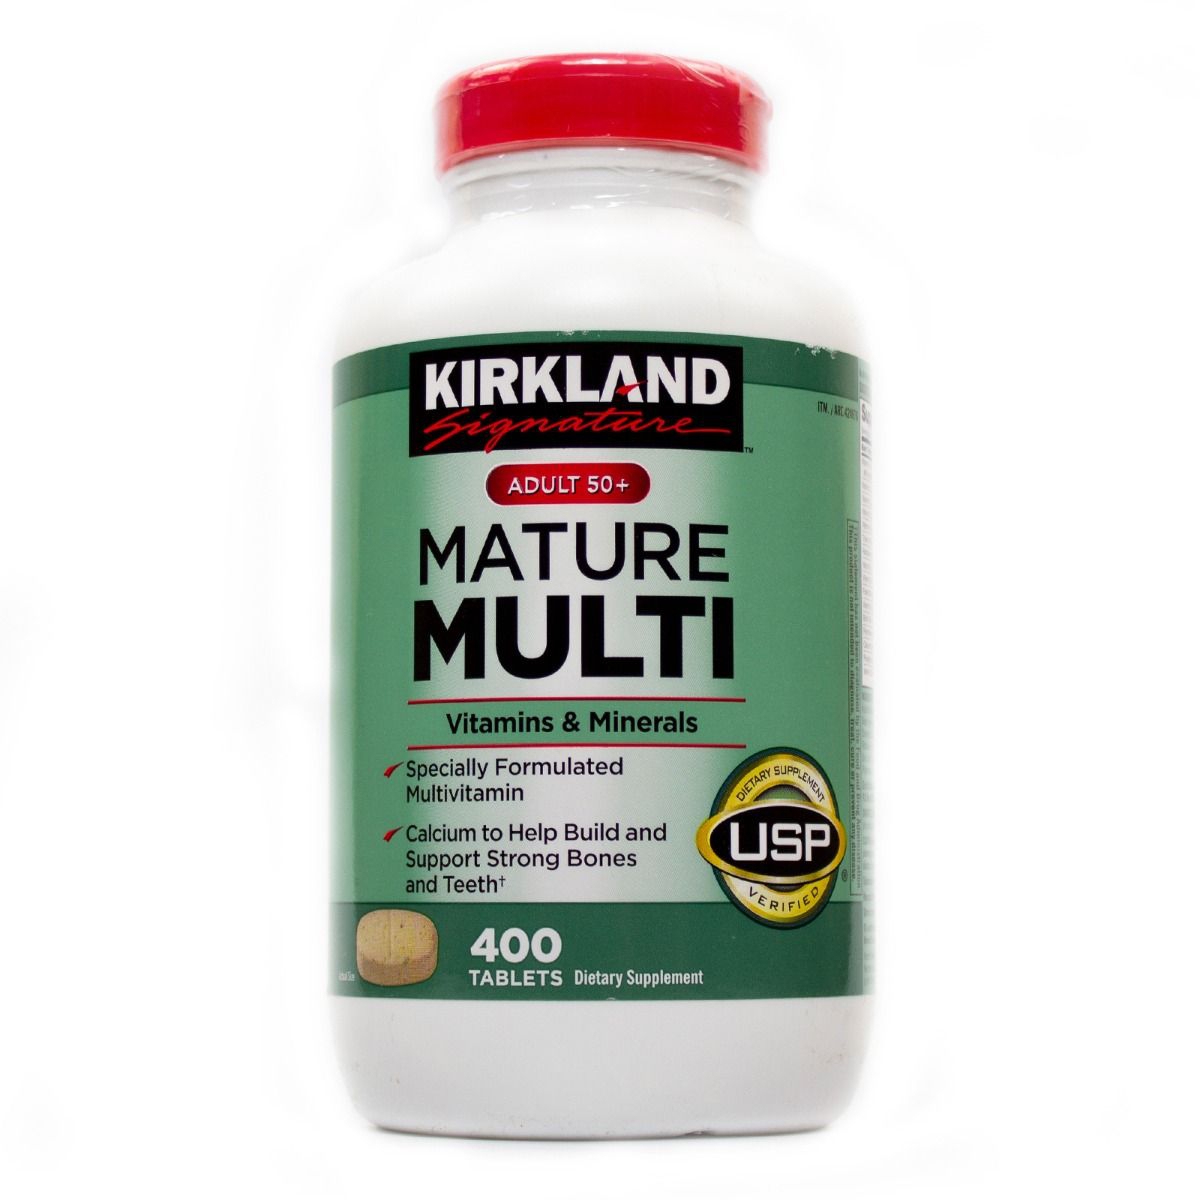 Kirkland Adult 50+ Mature Multi Vitamins & Minerals dành cho người lớn trên 50+, Chai 400 viên